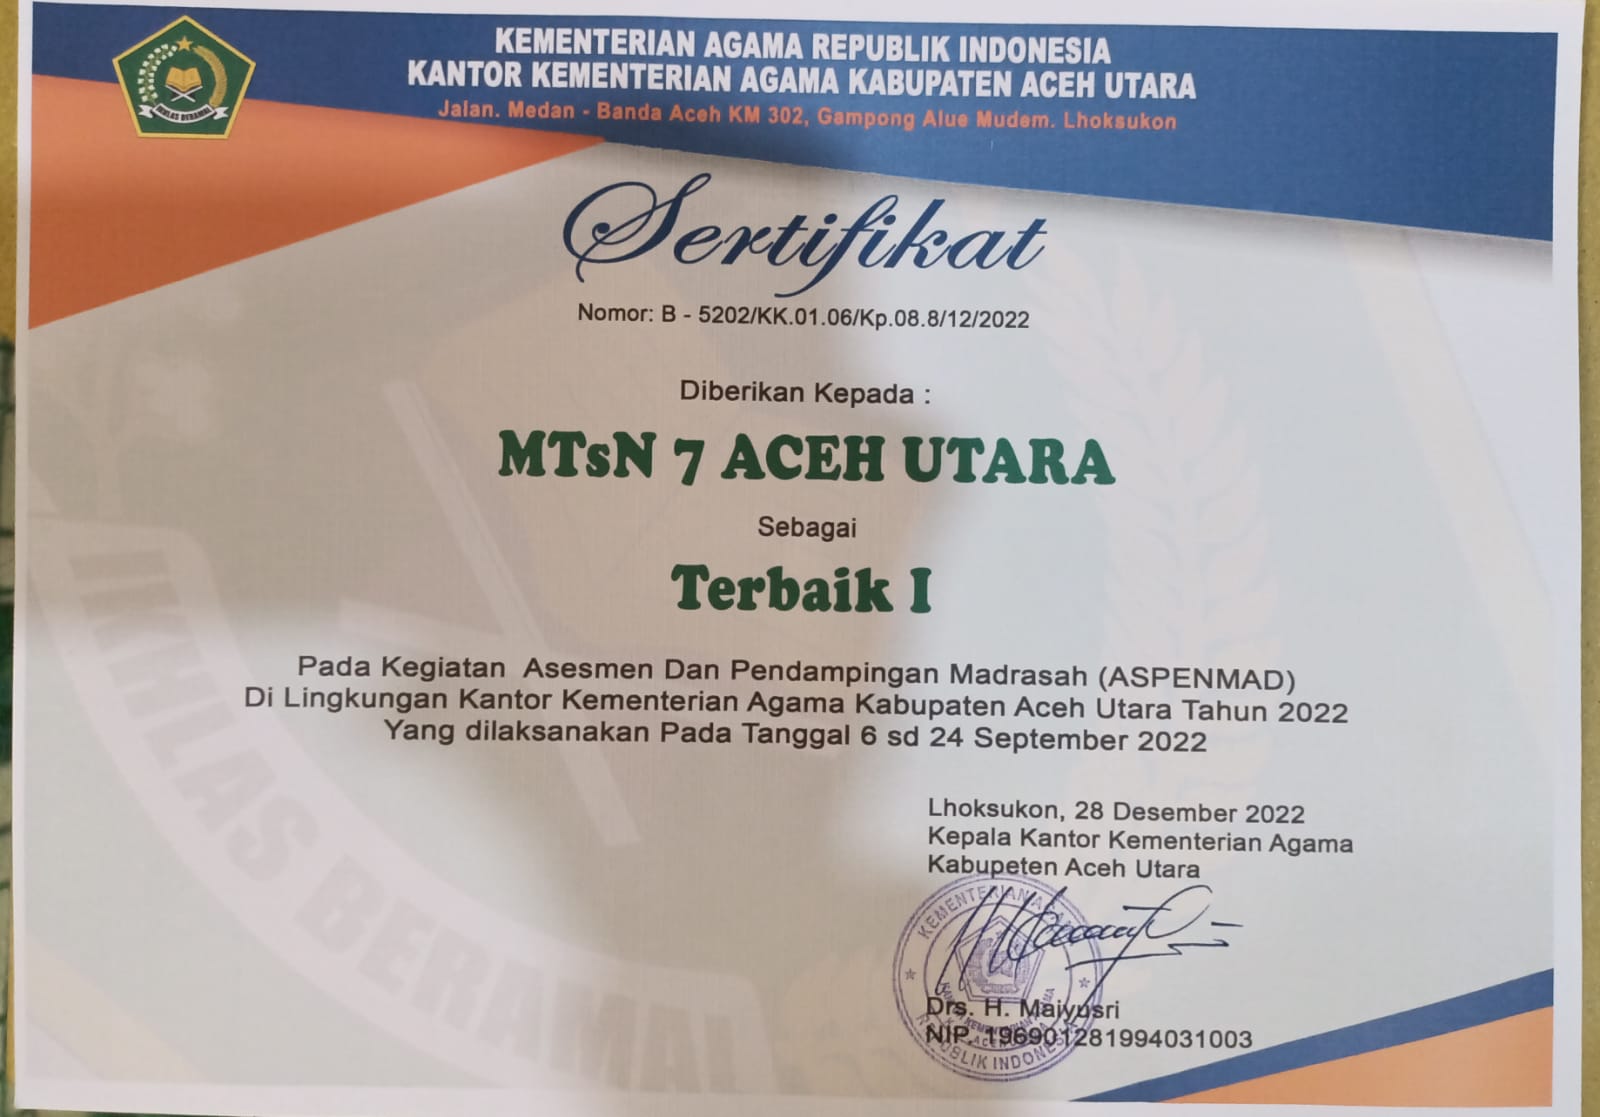 MTsN 7 Aceh Utara Kembali Meraih sebagai Terbaik I pada ASPENMAD 2022